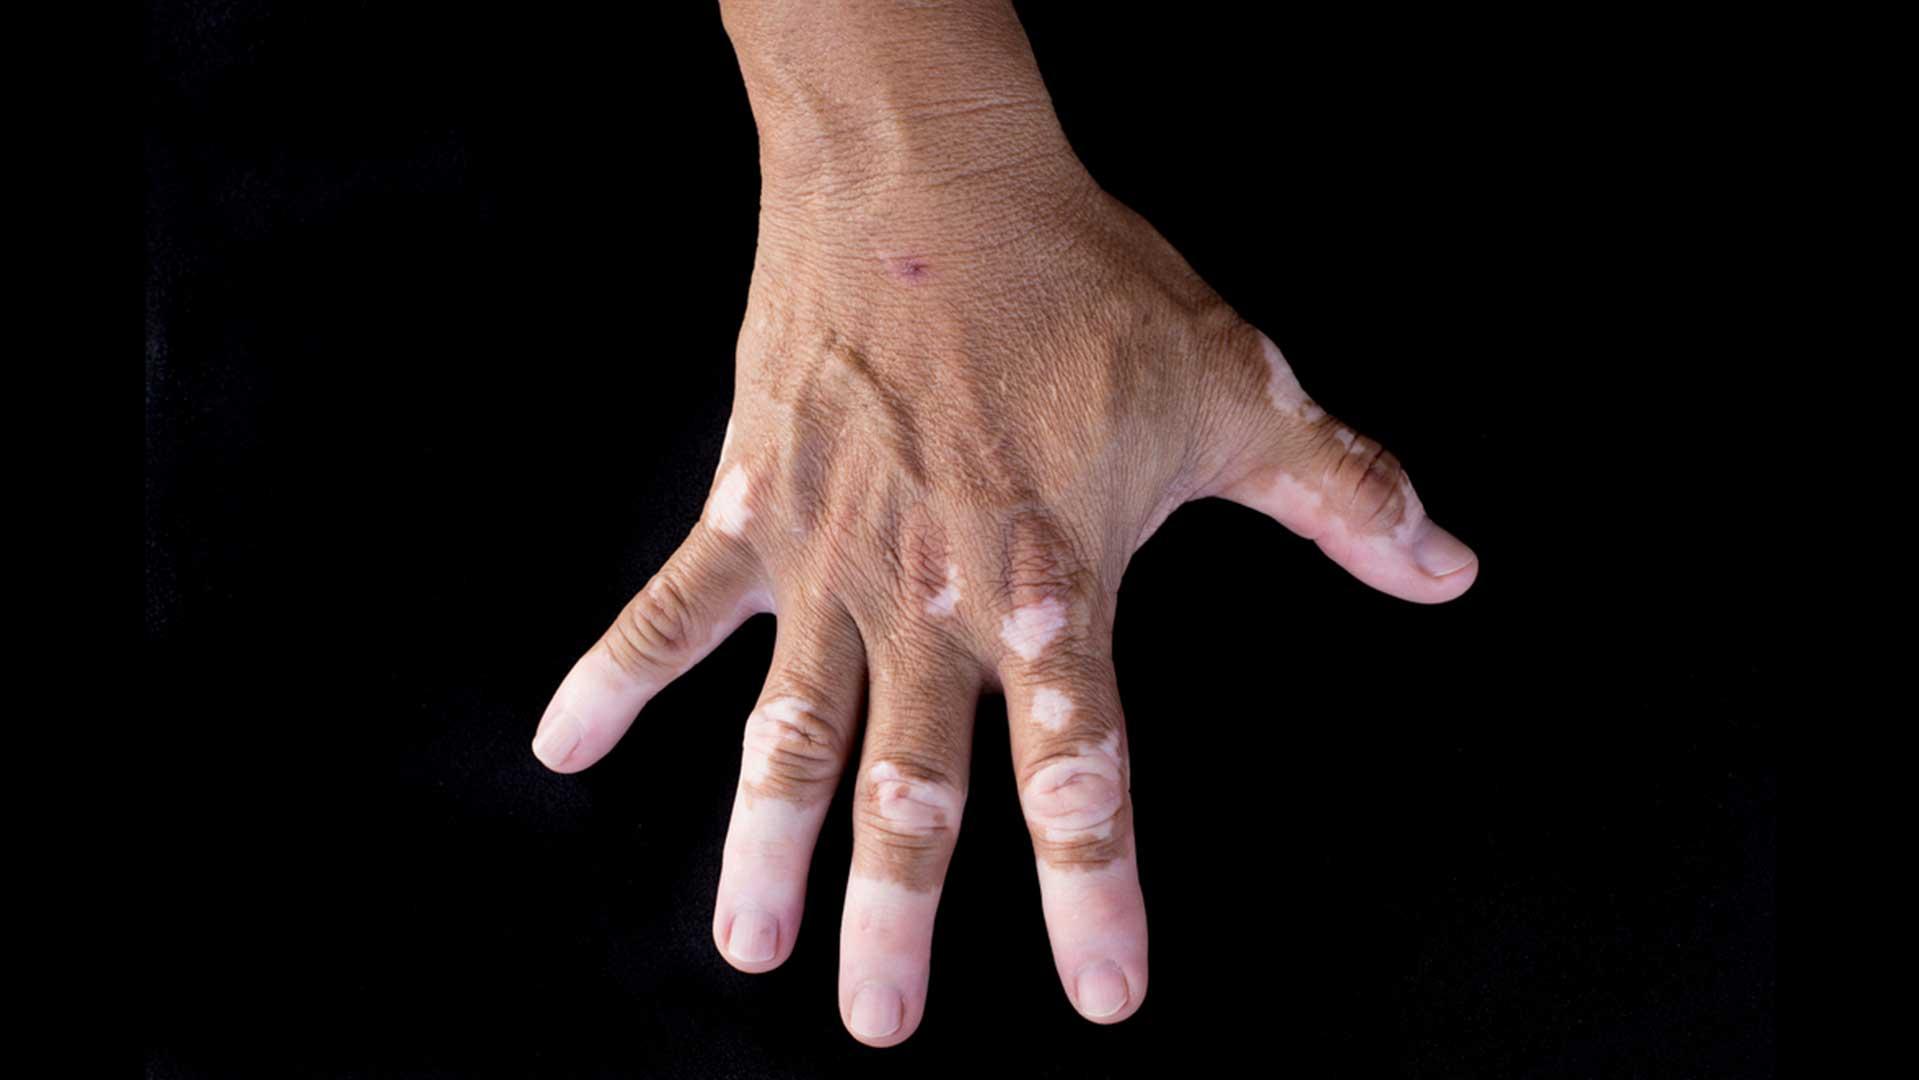 What are the symptoms of vitiligo?